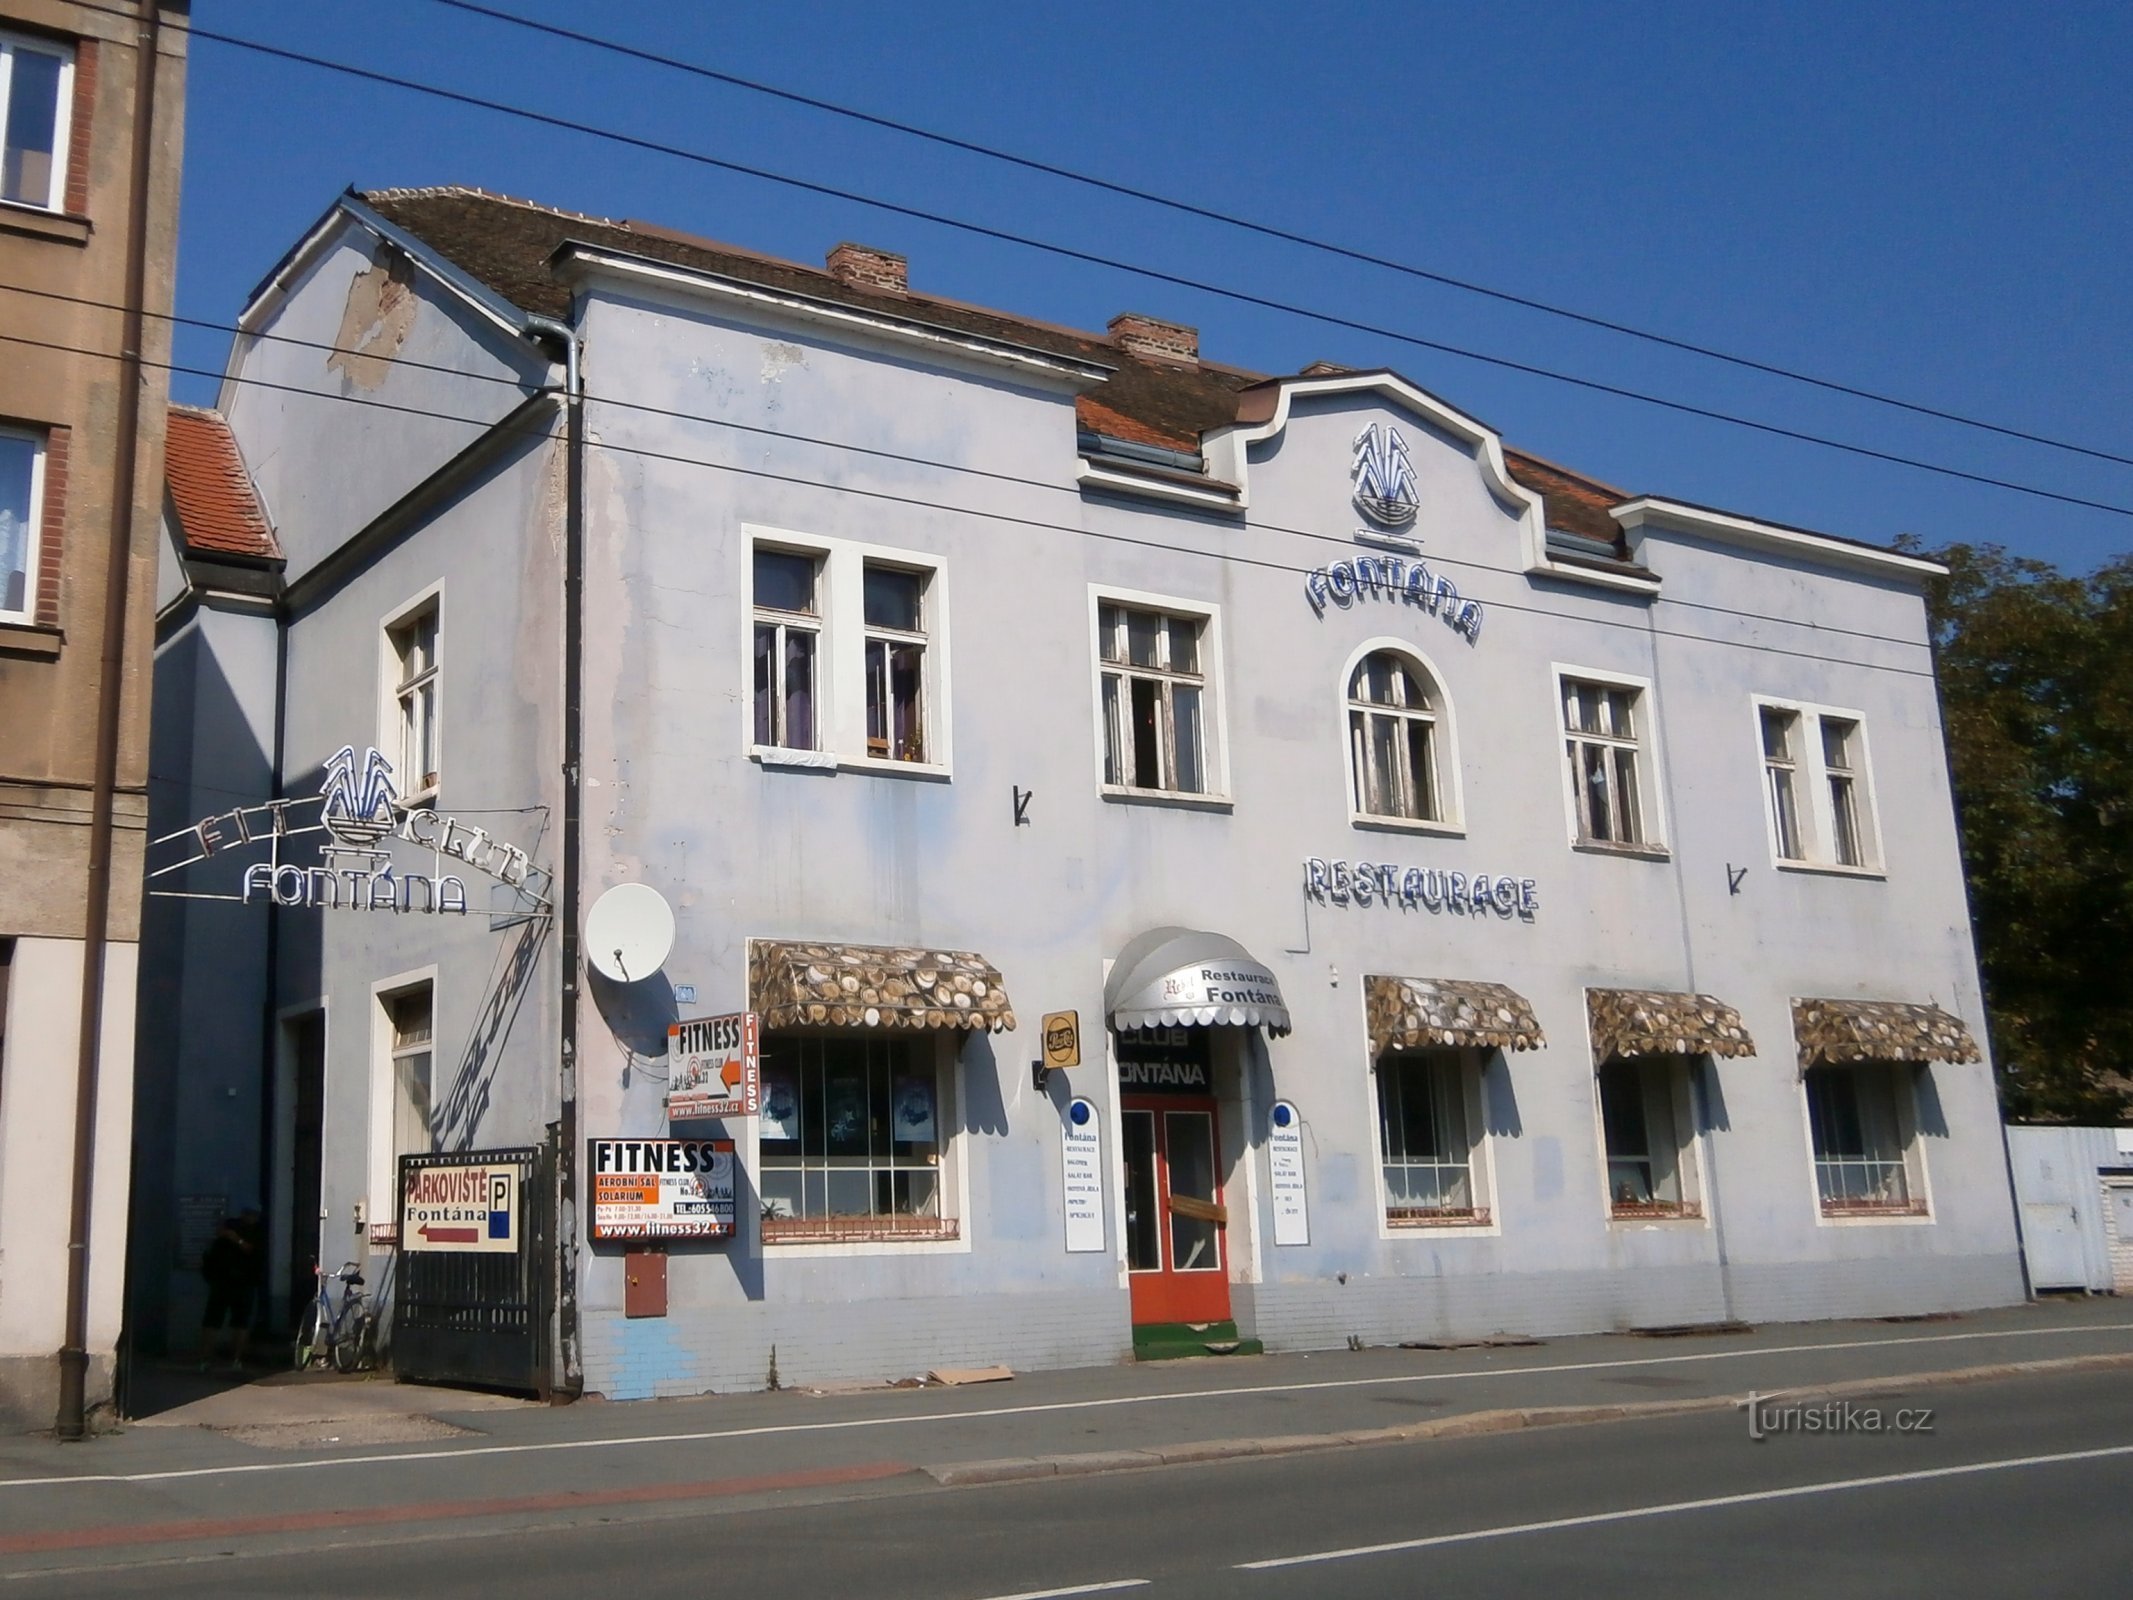 Restoran Fontána (Hradec Králové, 17.9.2014.)